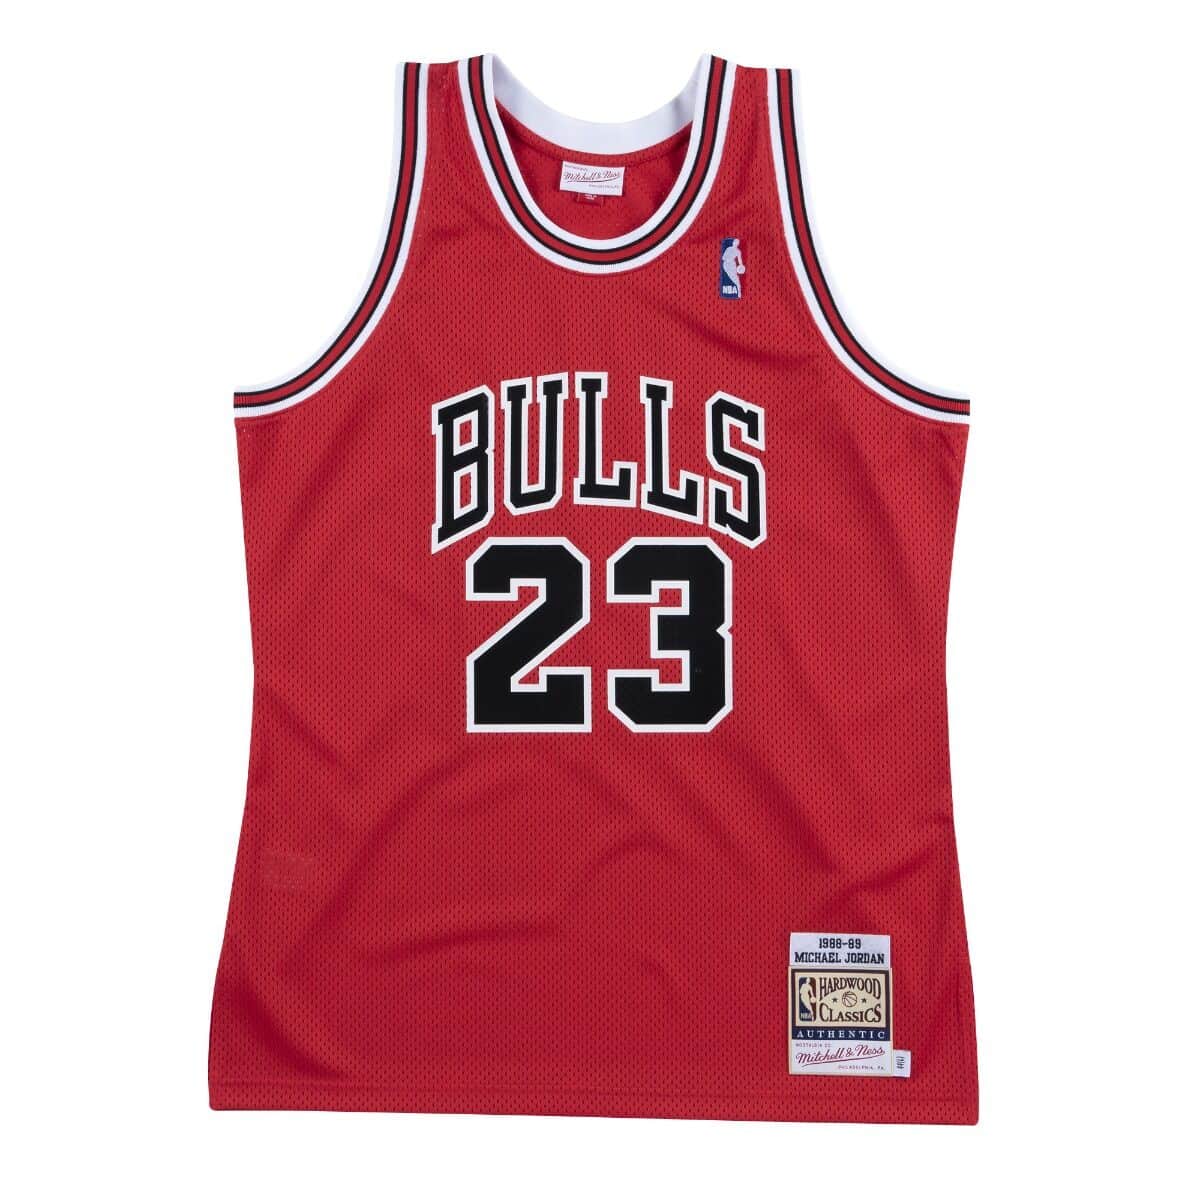 Authentic Jersey Chicago Bulls 1988-89 Michael Jordans